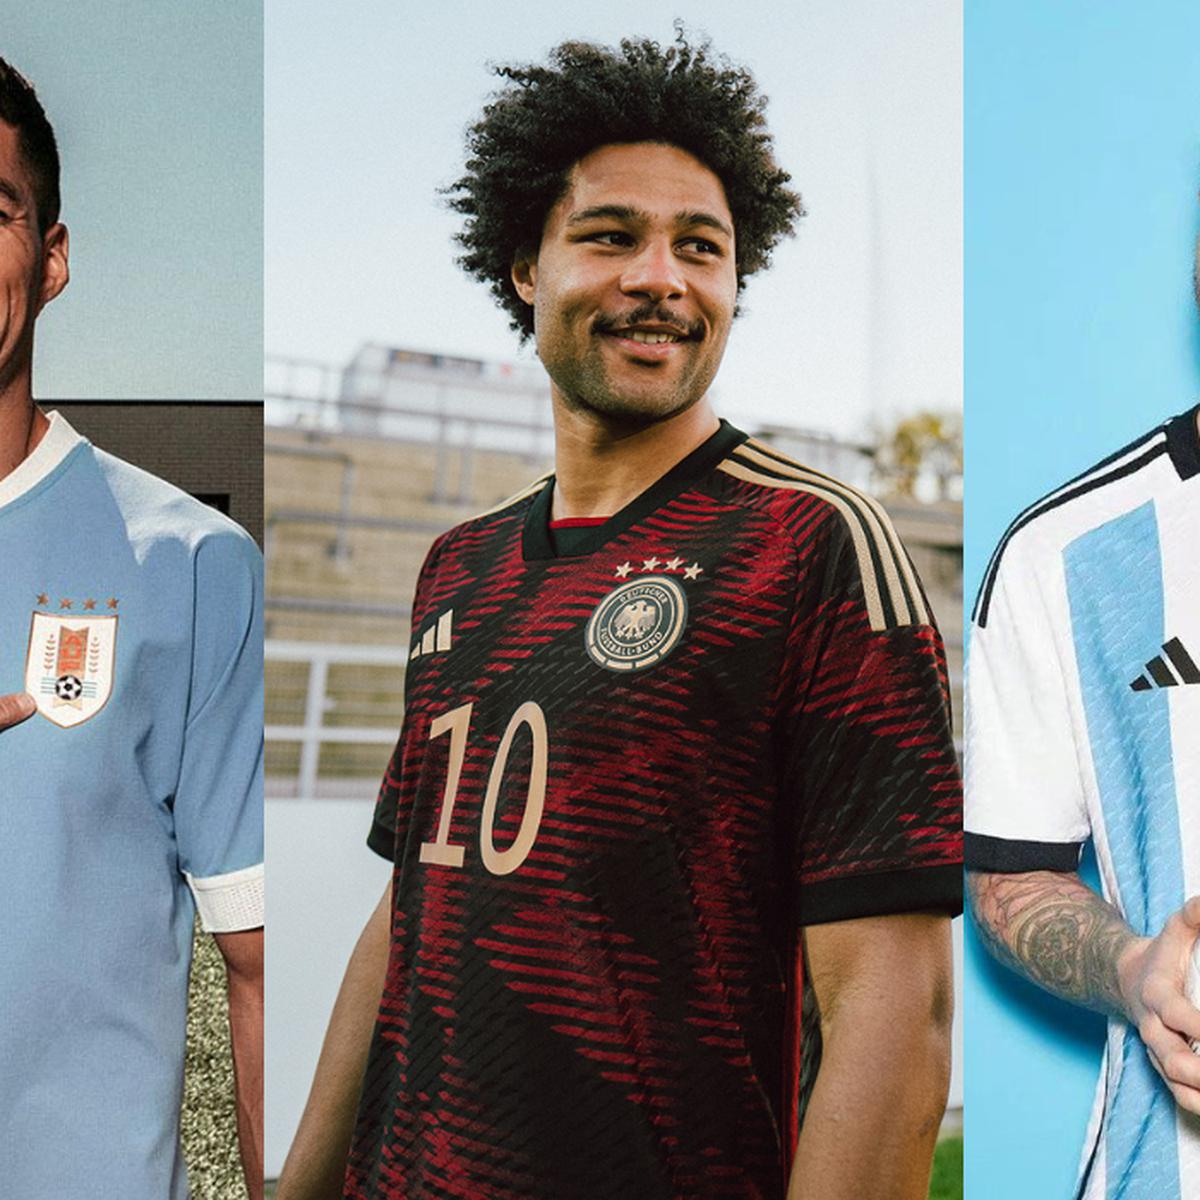 Mundial Qatar conoce las camisetas de todas las selecciones en la Copa del Mundo | FOTOS | Argentina, Brasil, México, Alemania, España, Uruguay, Ecuador, Japón | Adidas, Puma, Nike | FUTBOL-INTERNACIONAL | DEPOR